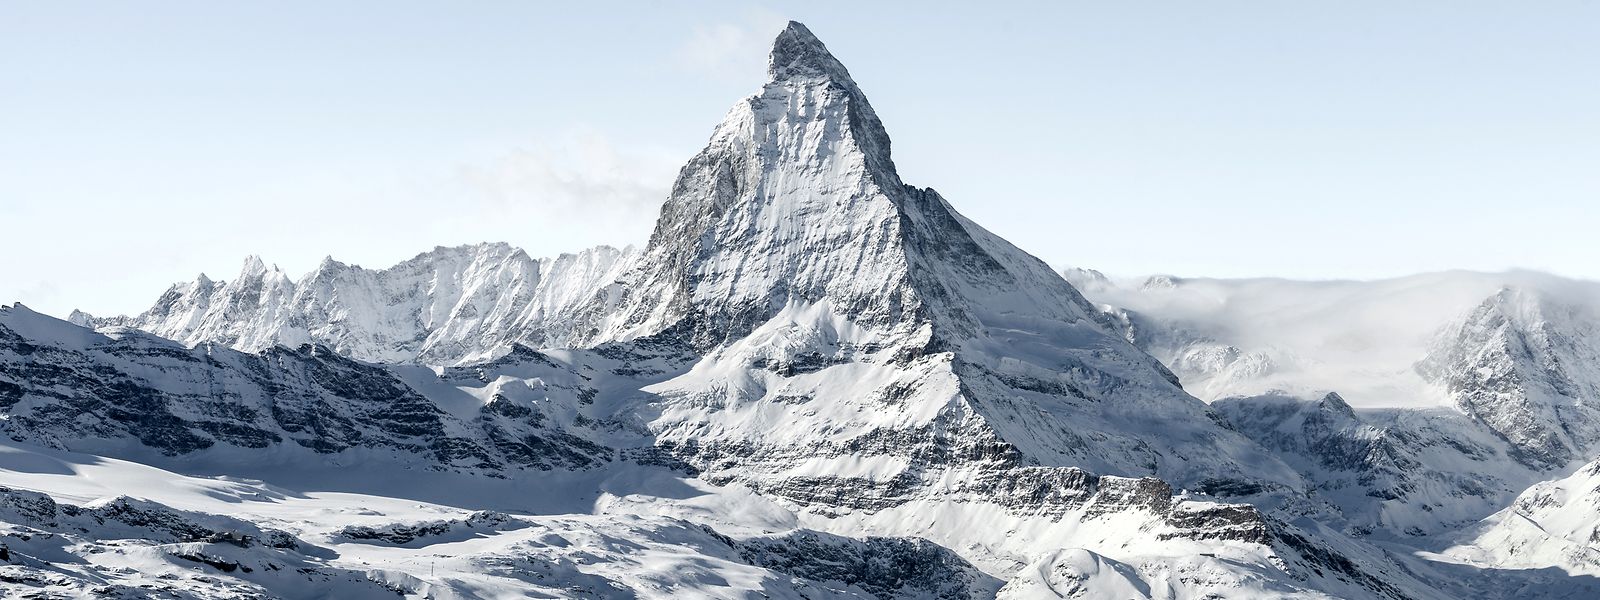 Blick auf das Matterhorn im Winter.